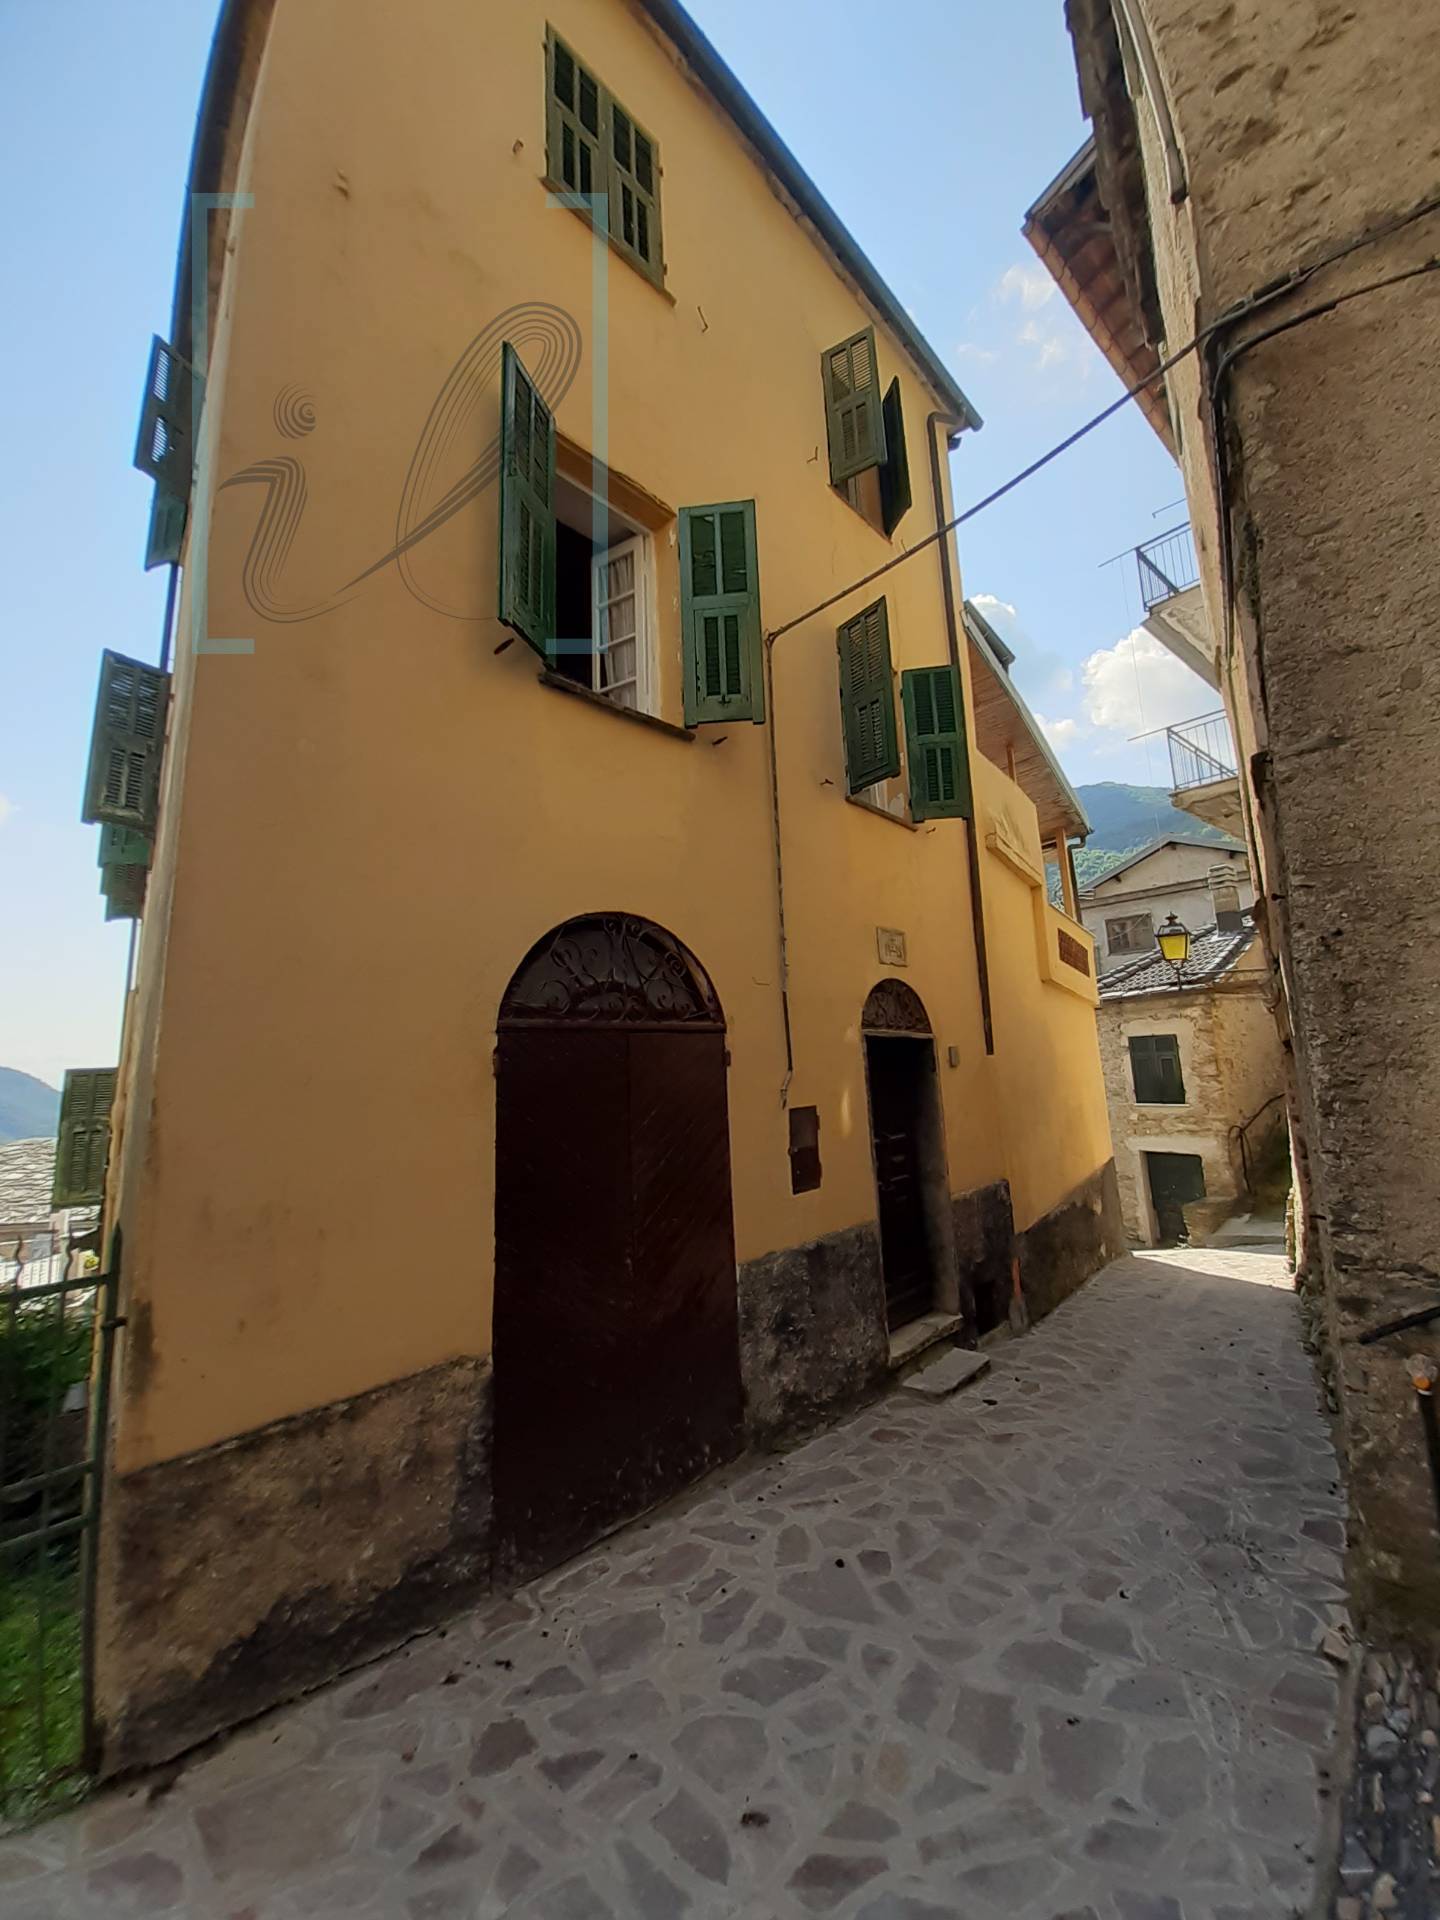 Rustico / Casale in vendita a Rezzo, 8 locali, prezzo € 98.000 | PortaleAgenzieImmobiliari.it